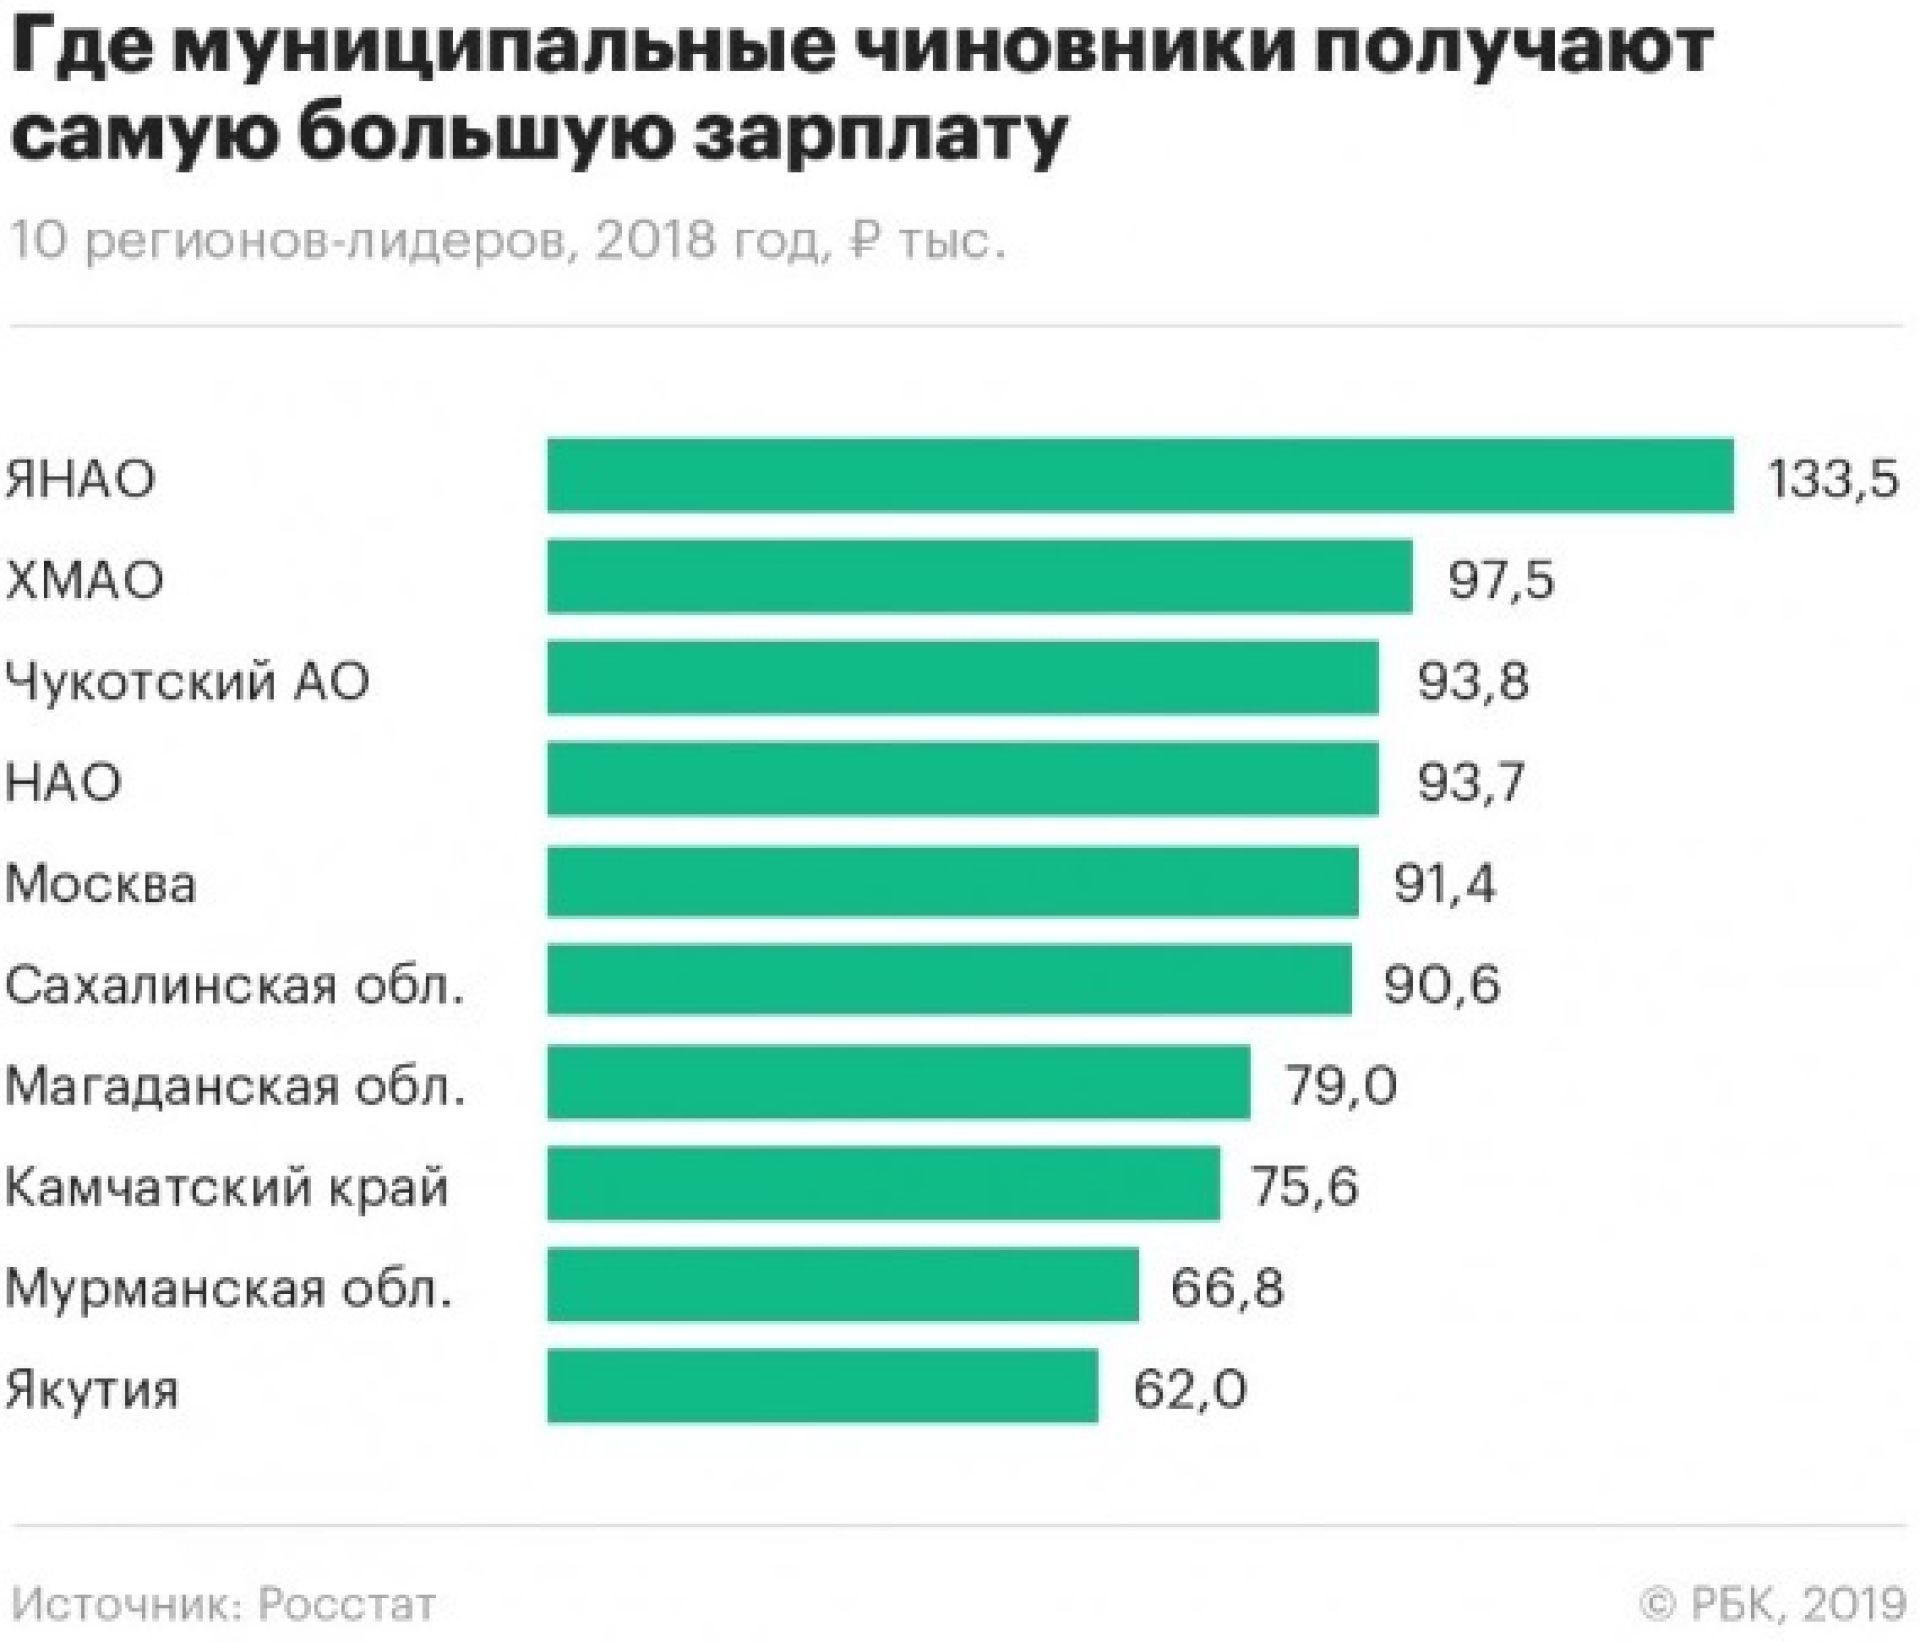 Максимальная зарплата сколько. Самая большая заработная плата. Самые высокие зарплаты в России. Самая большая заработная плата в России. Самая большая зарплата.